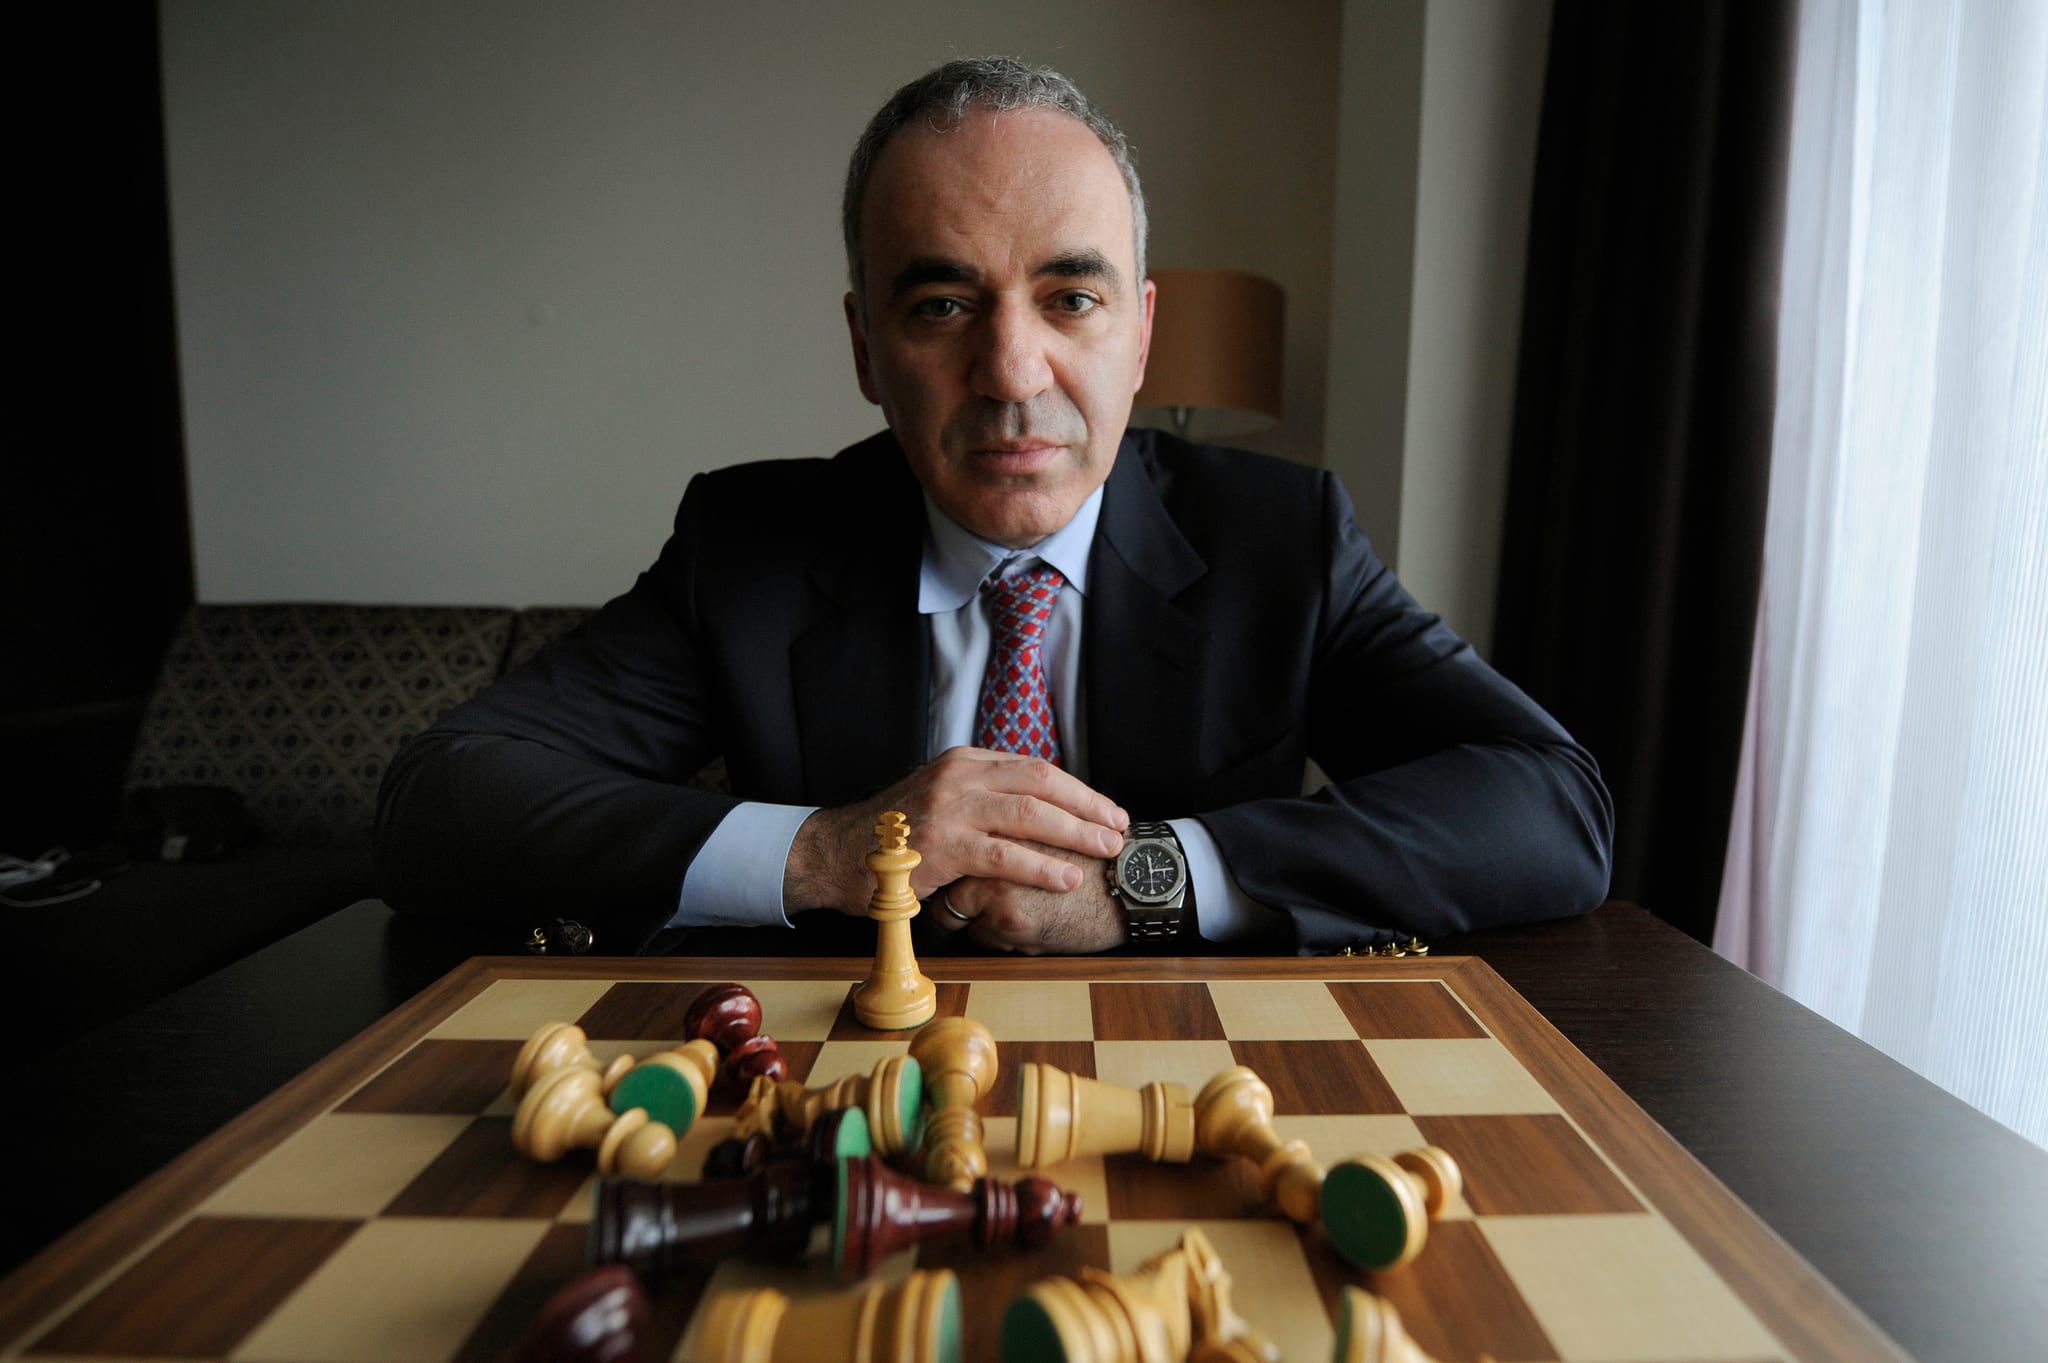 Novo livro de Garry Kasparov compara Governo russo à série “Guerra dos  Tronos”, Livros